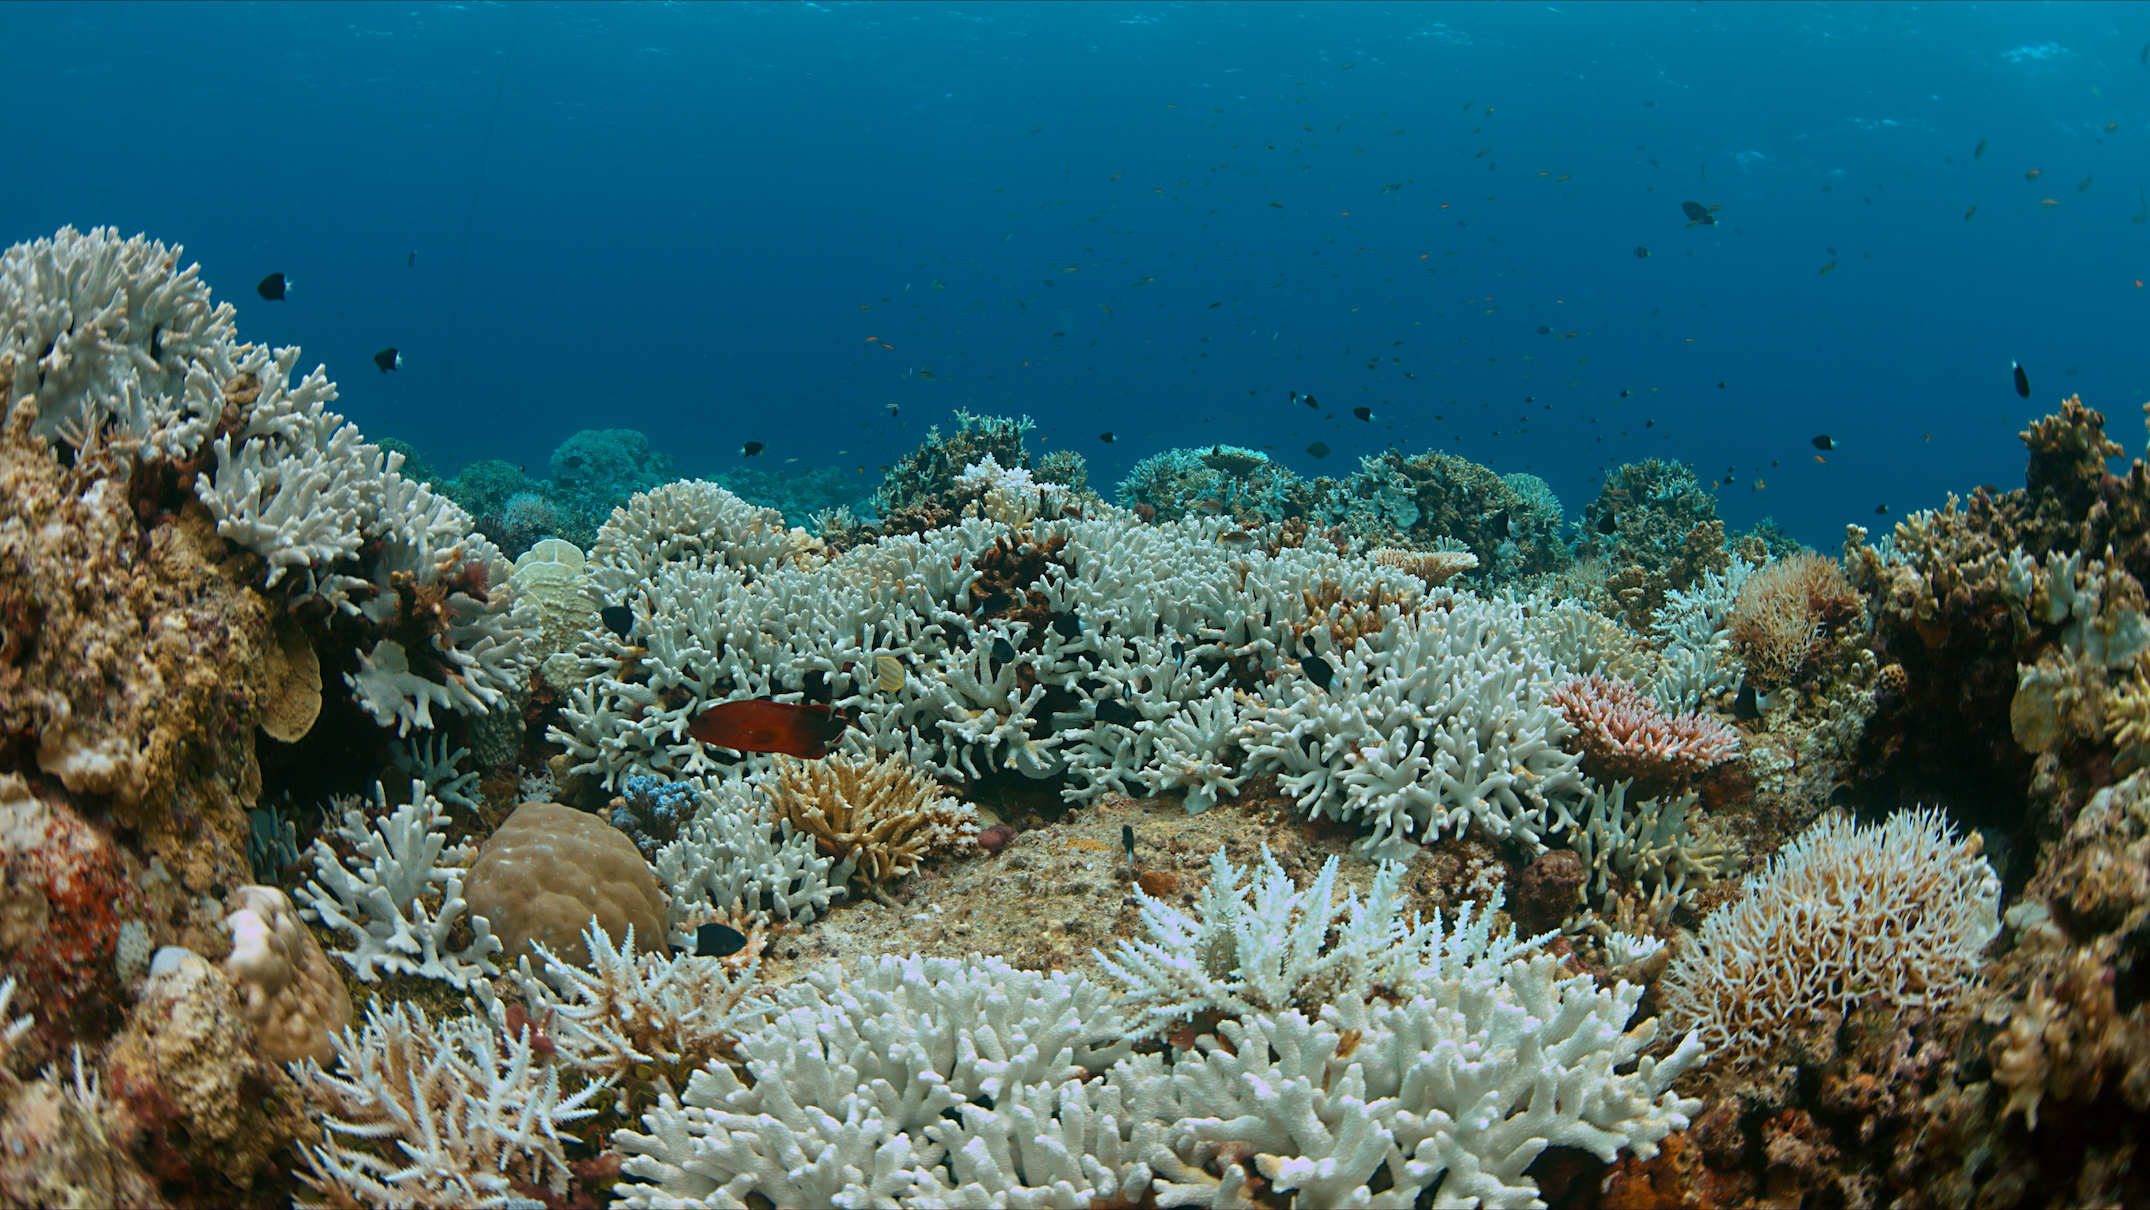 Сообщество коралловых рифов